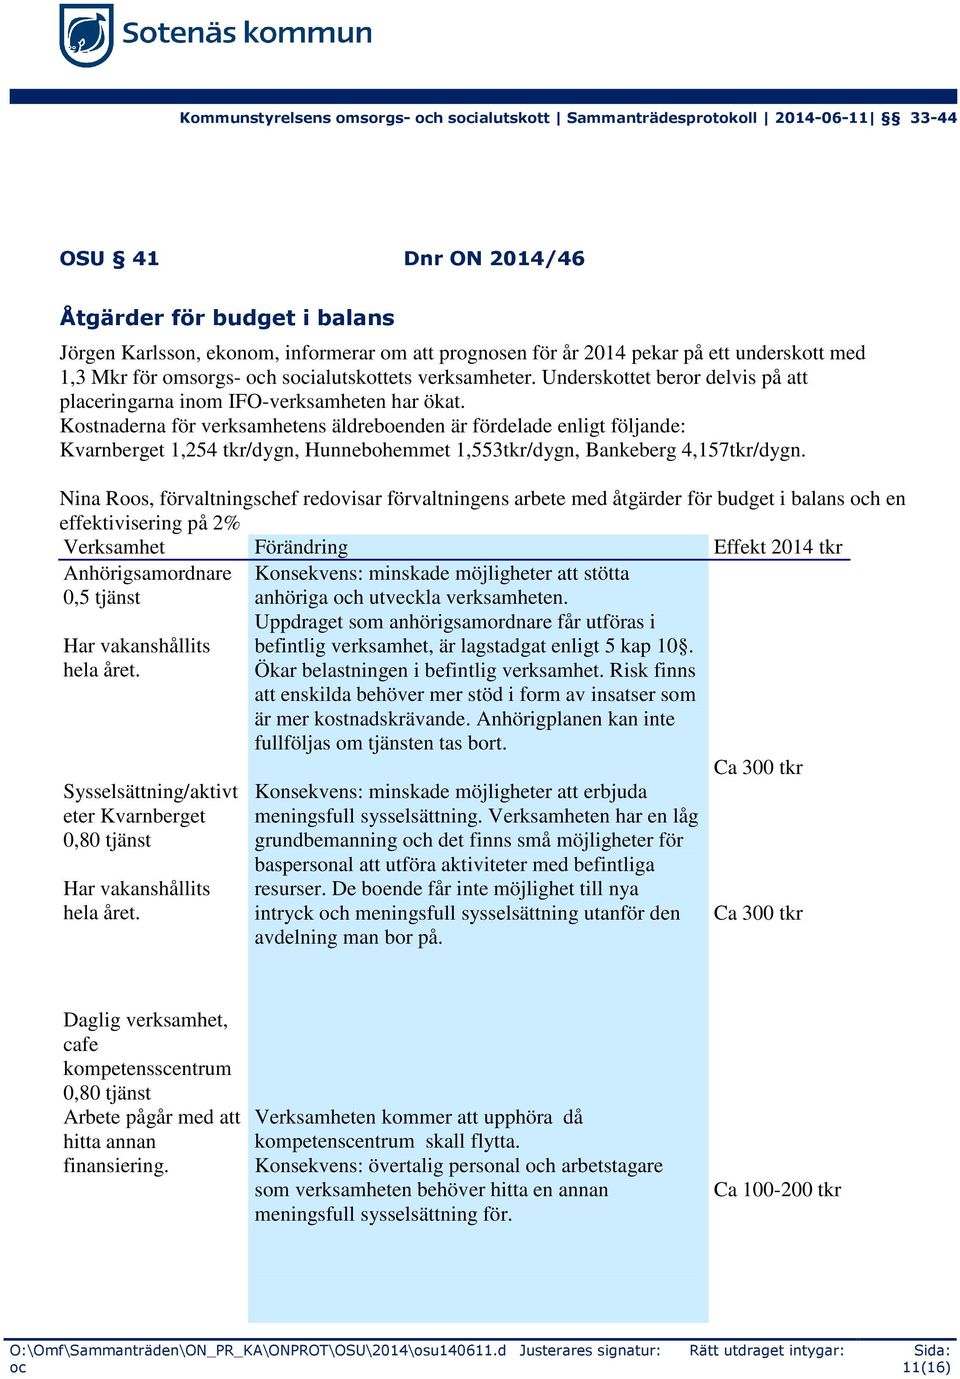 Kostnaderna för verksamhetens äldreboenden är fördelade enligt följande: Kvarnberget 1,254 tkr/dygn, Hunnebohemmet 1,553tkr/dygn, Bankeberg 4,157tkr/dygn.